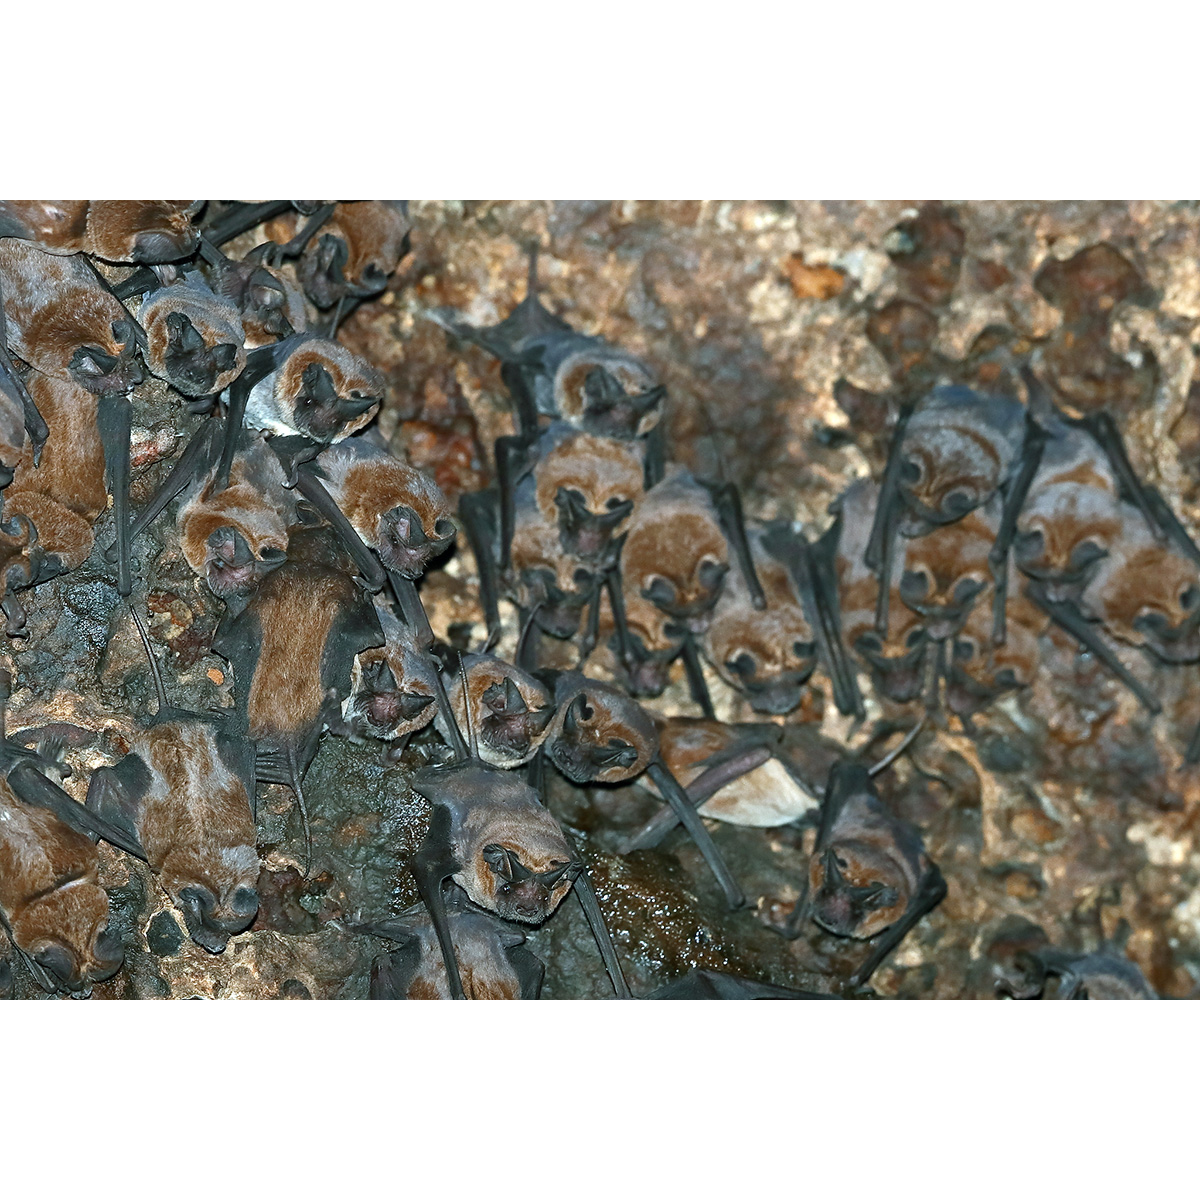 Азиатский малый складчатогуб (Chaerephon plicatus) Фото №5